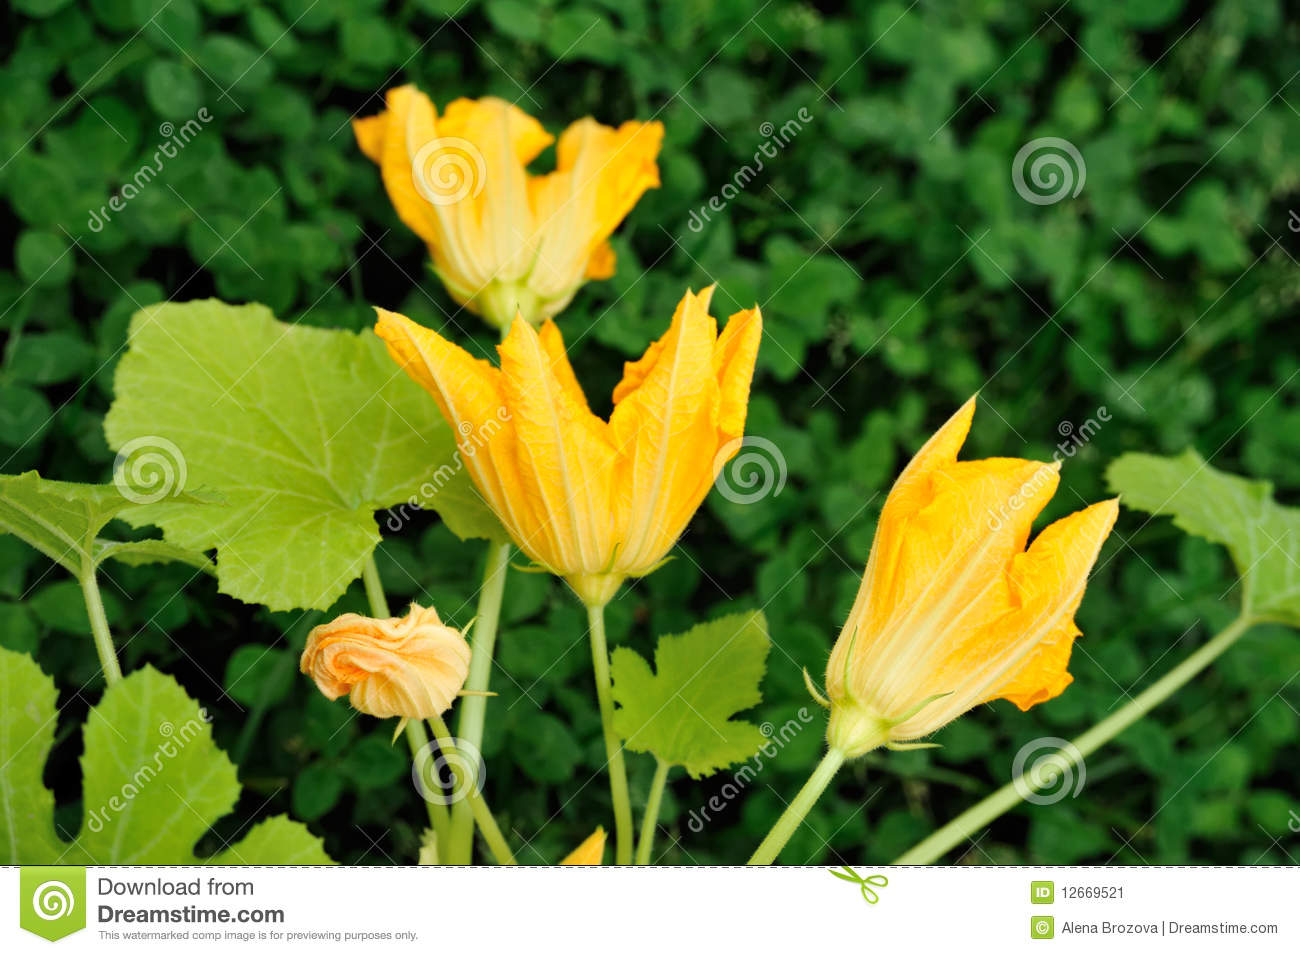 flores-y-hojas-de-la-calabaza-12669521.jpg